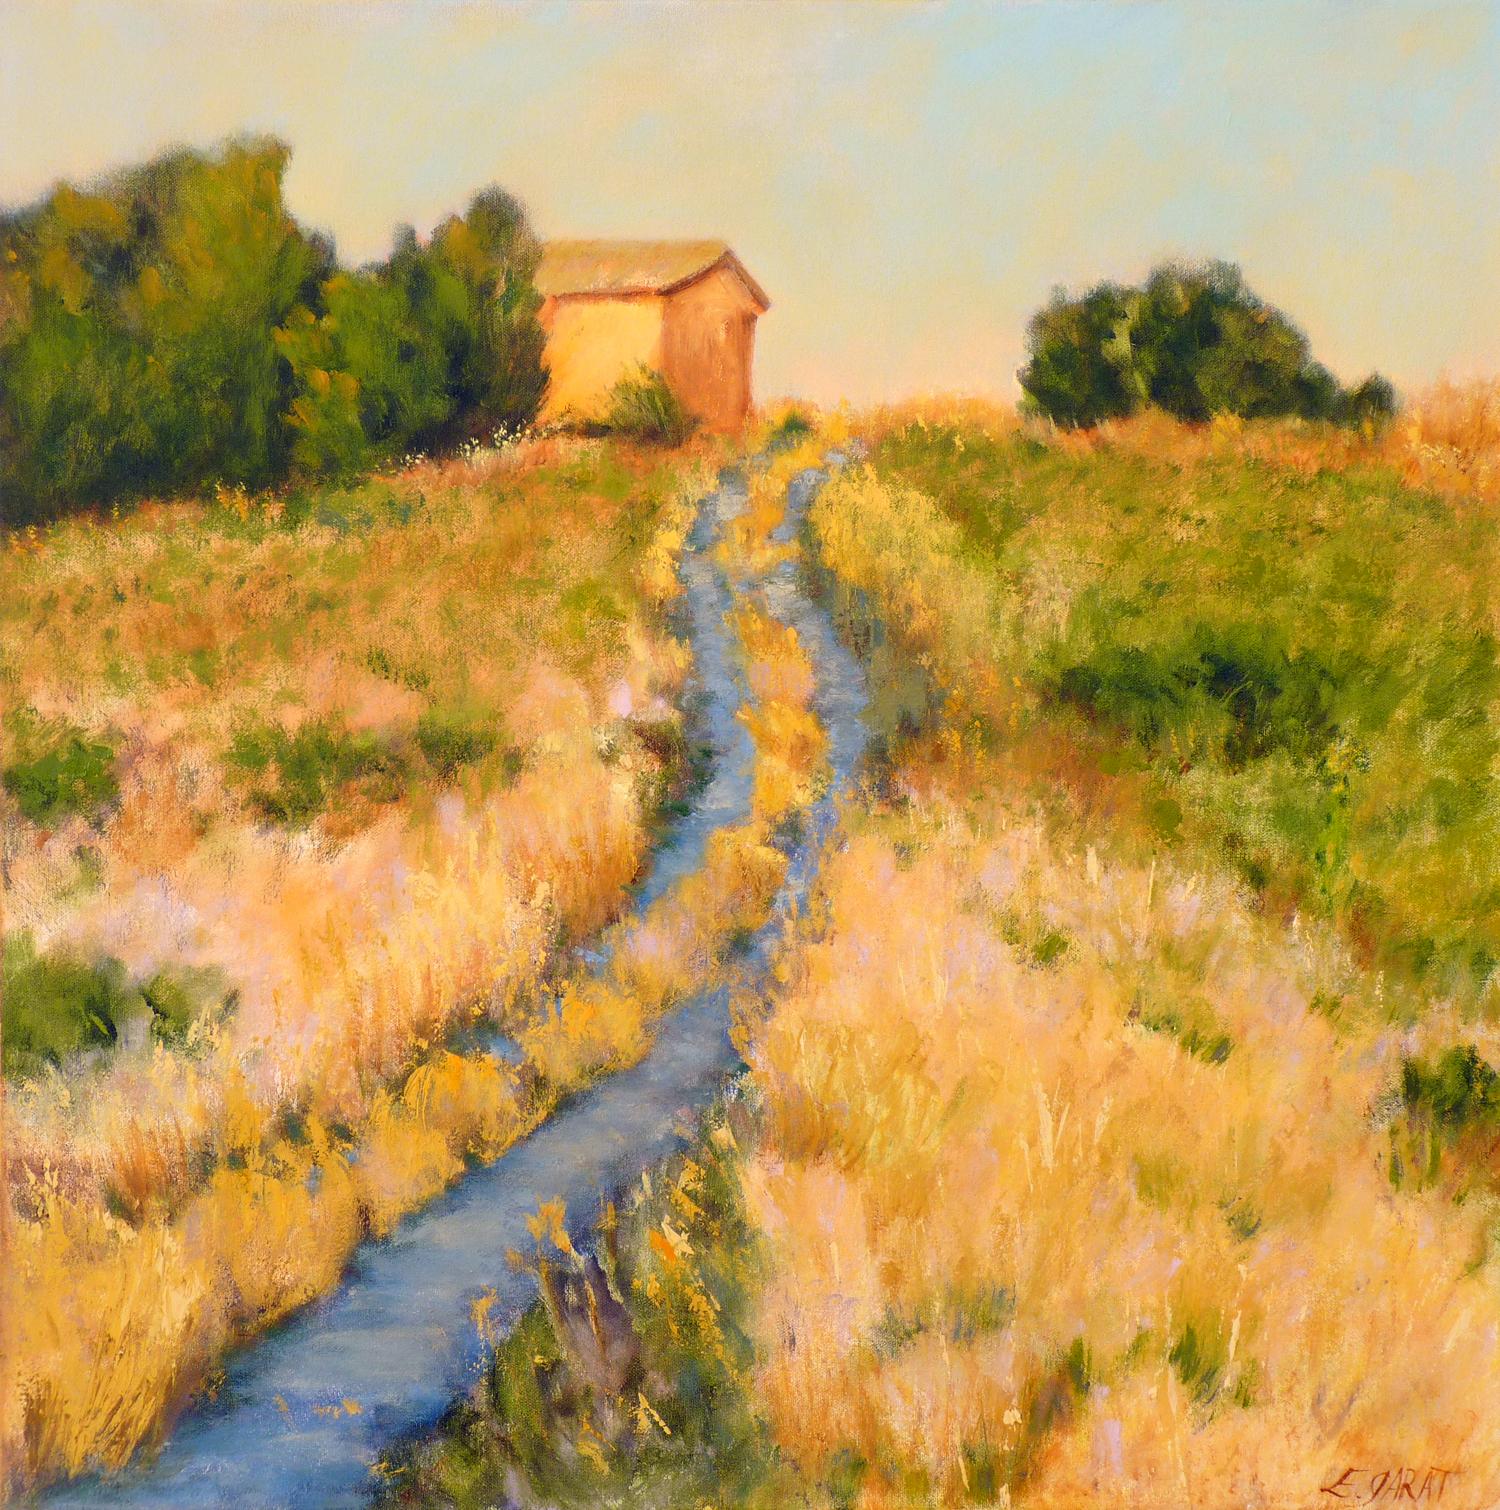 Elizabeth Garat Landscape Painting - Blue Road at Dusk